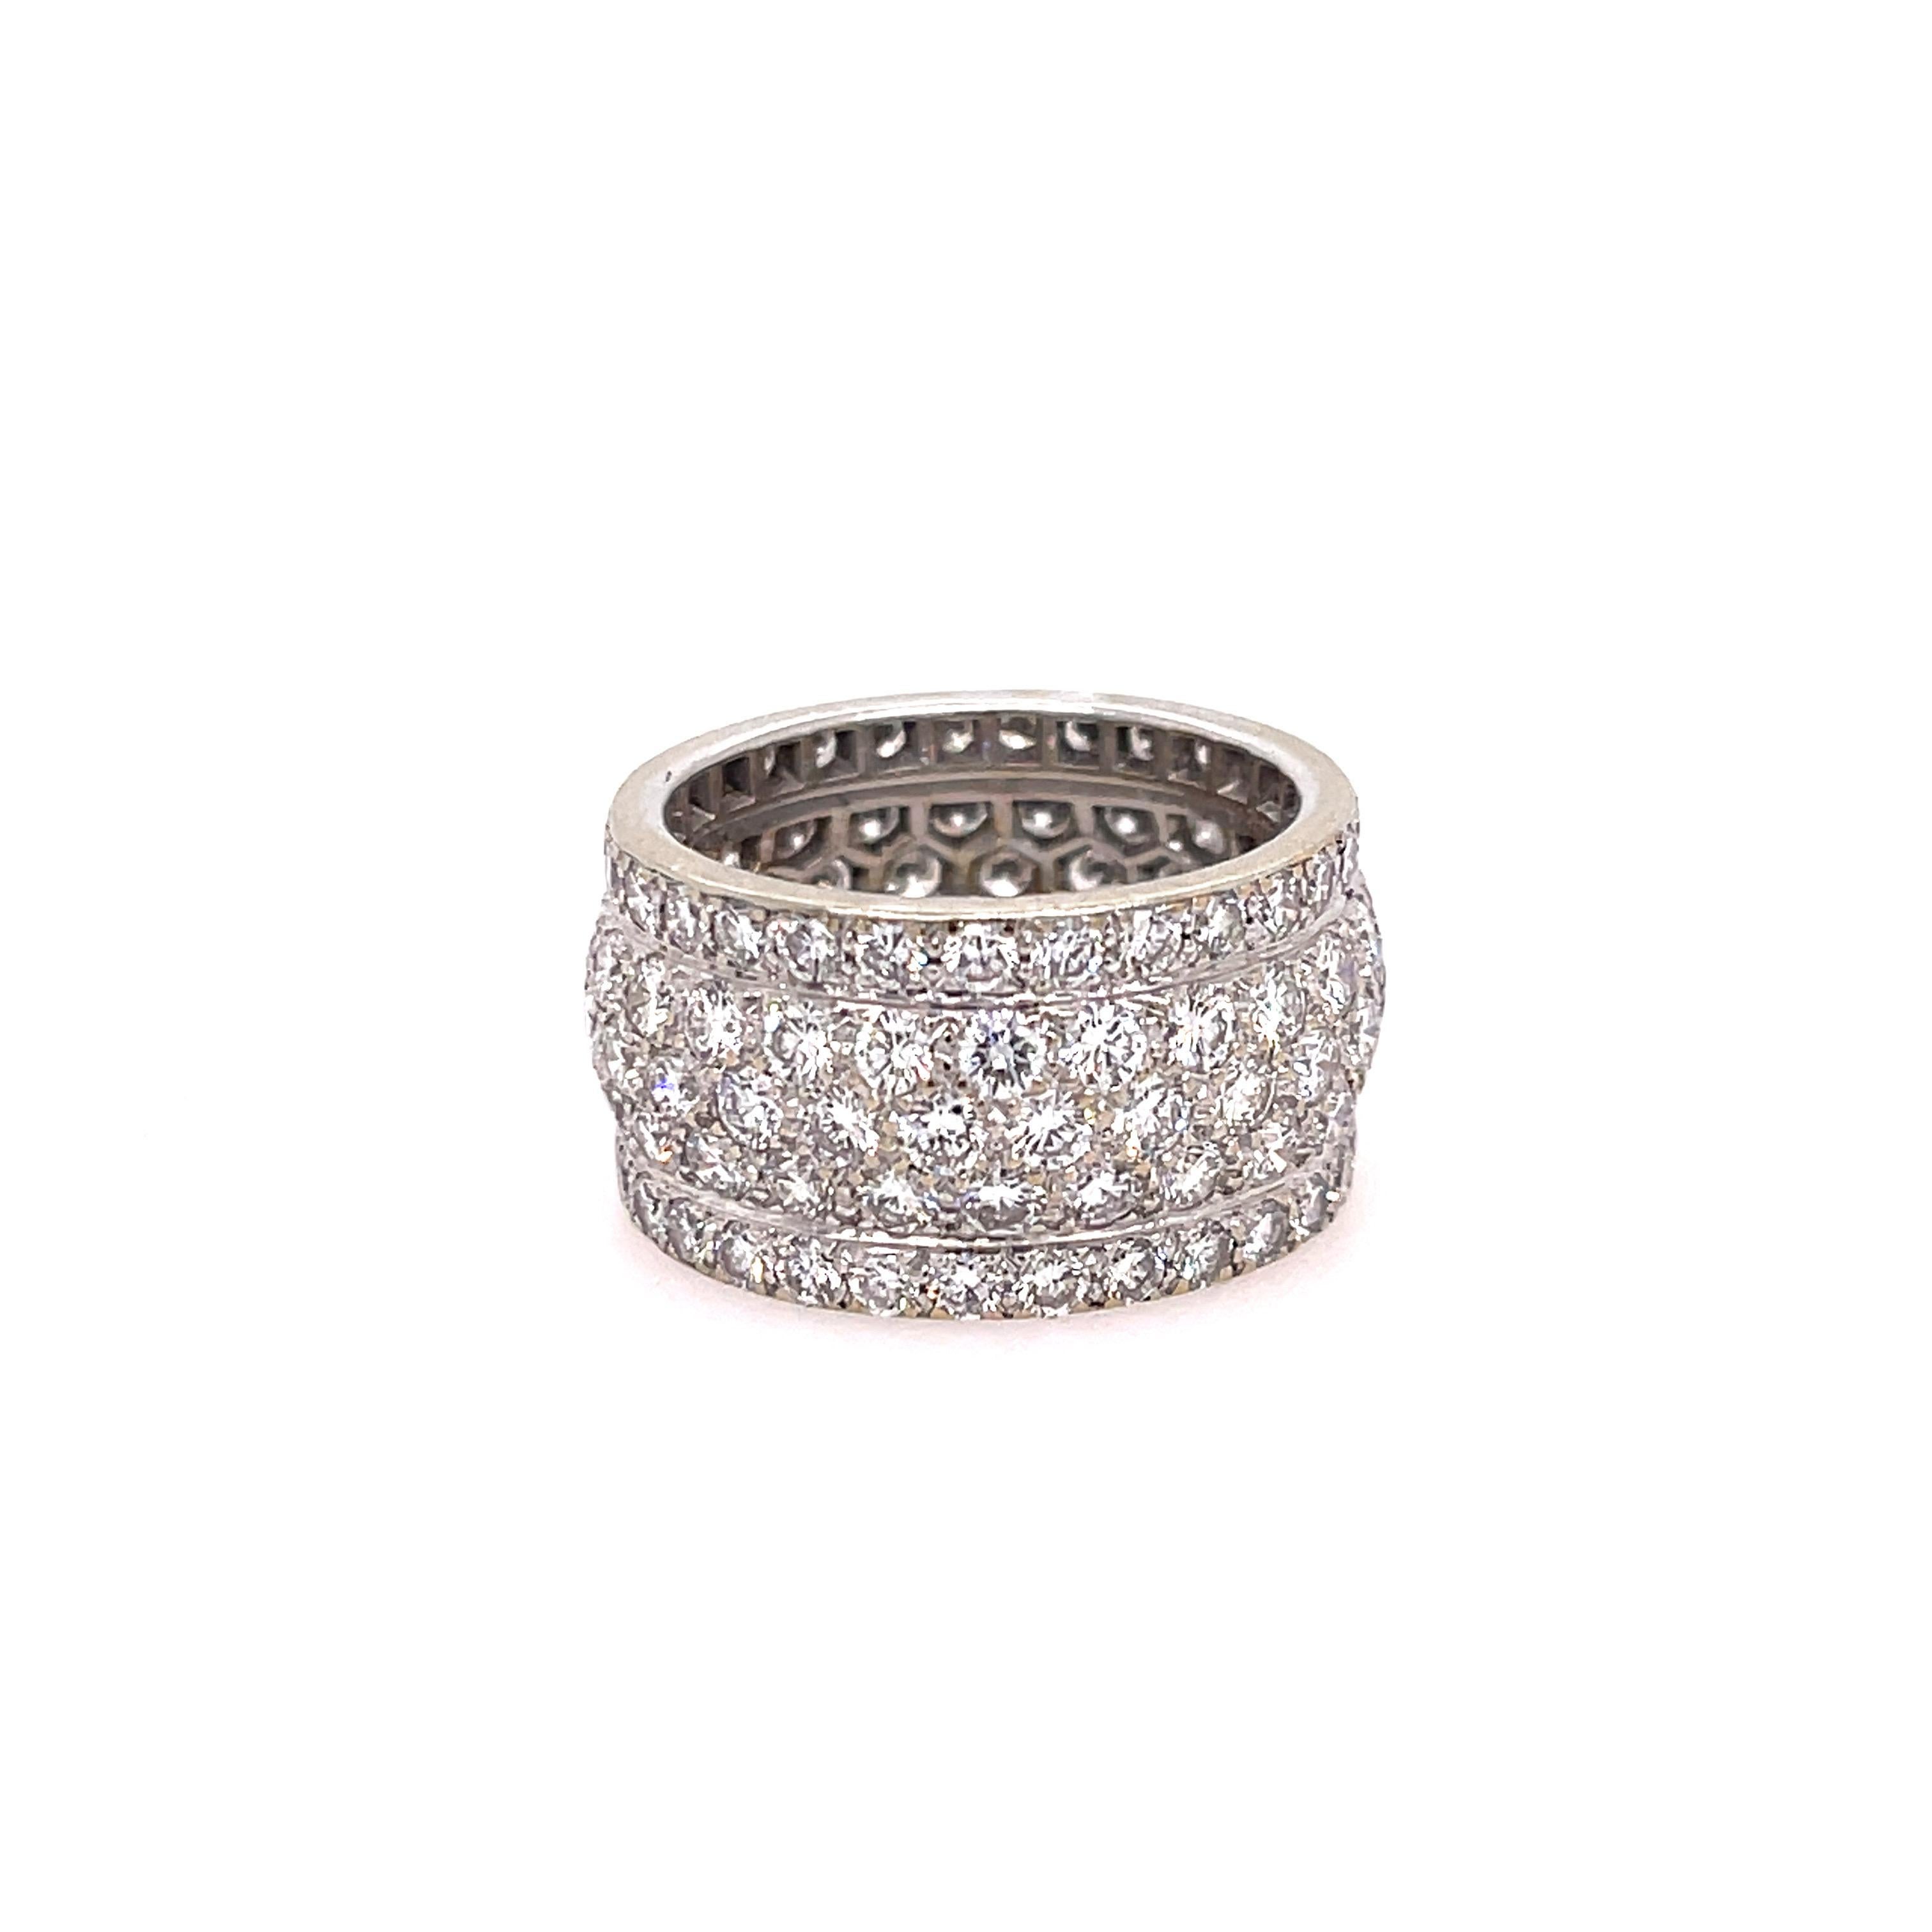 Estate Cartier Nigeria Diamond Band 18K Weißgold. Der Ring enthält etwa  5,50ctw Diamanten im Brillantrundschliff (Farbe F-G, Reinheit VVS-VS1). Gestempelt mit französischen Punzen und Cartier 750. Fingergröße 7,5, Ring nicht größenverstellbar.